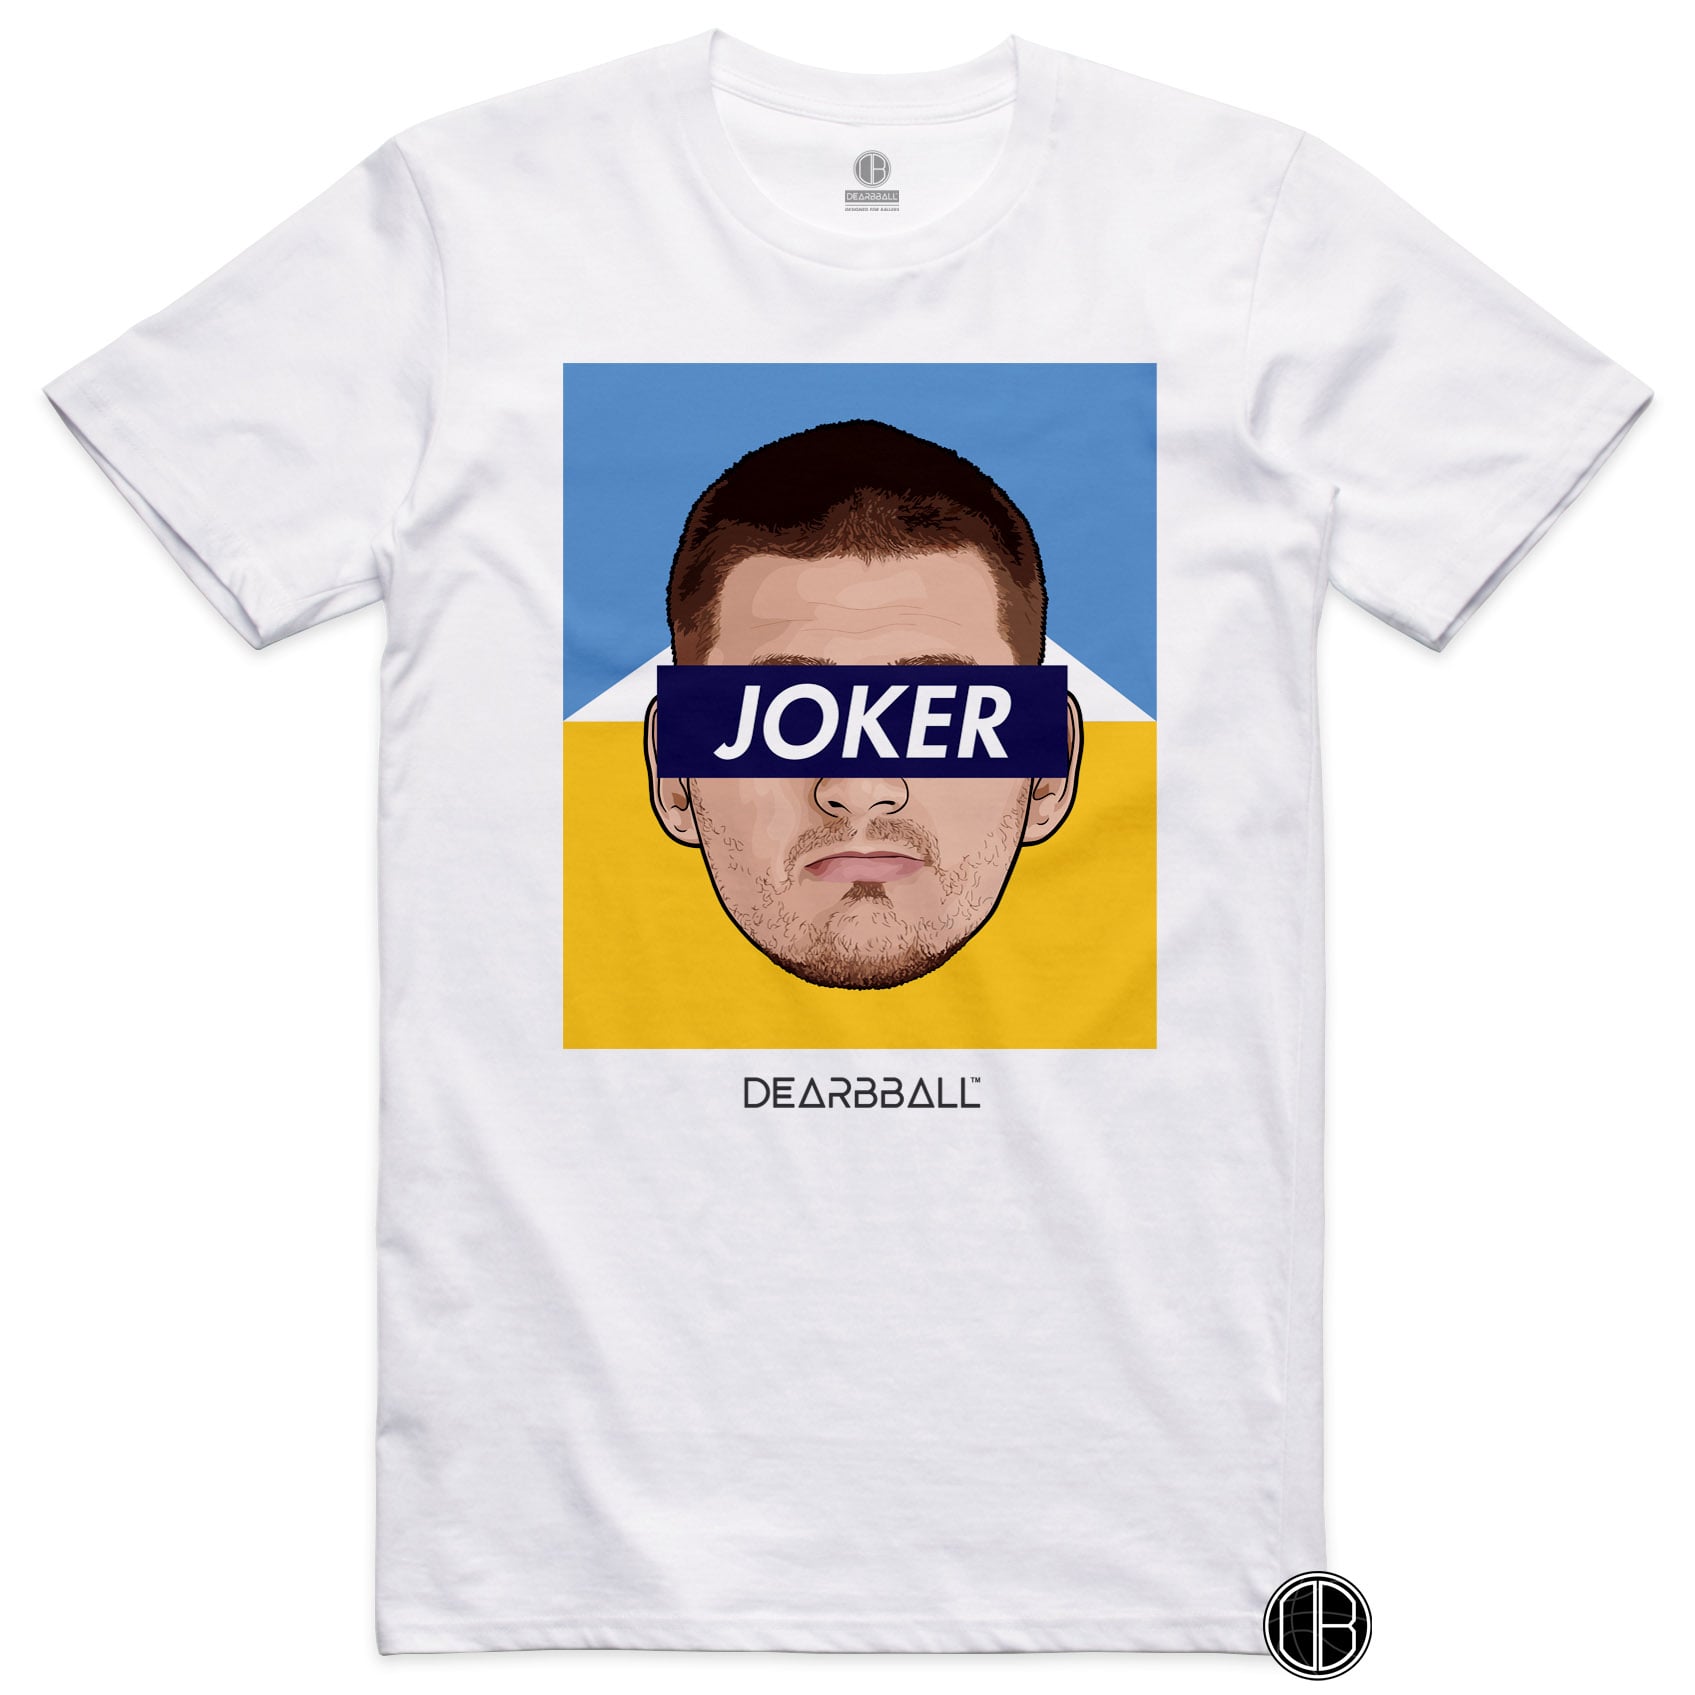 DearBBall T-Shirt - JOKER Mountains Edition